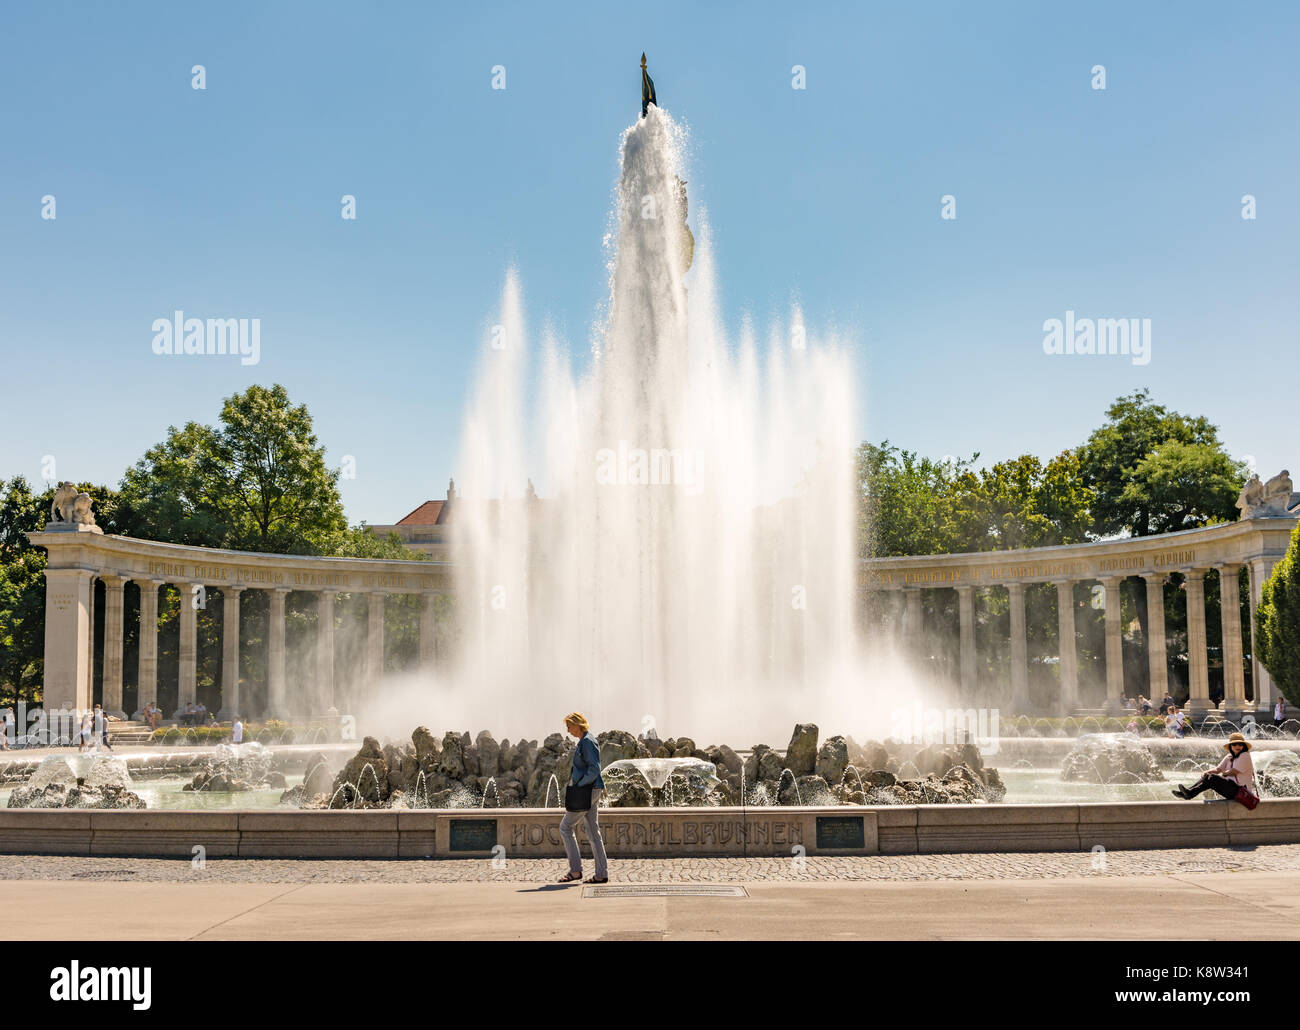 Vienne, Autriche - 29 août : la hochstrahlbrunnen fontaine et le mémorial de guerre soviétique à la Schwarzenbergplatz à Vienne, Autriche, le 29 août 201 Banque D'Images